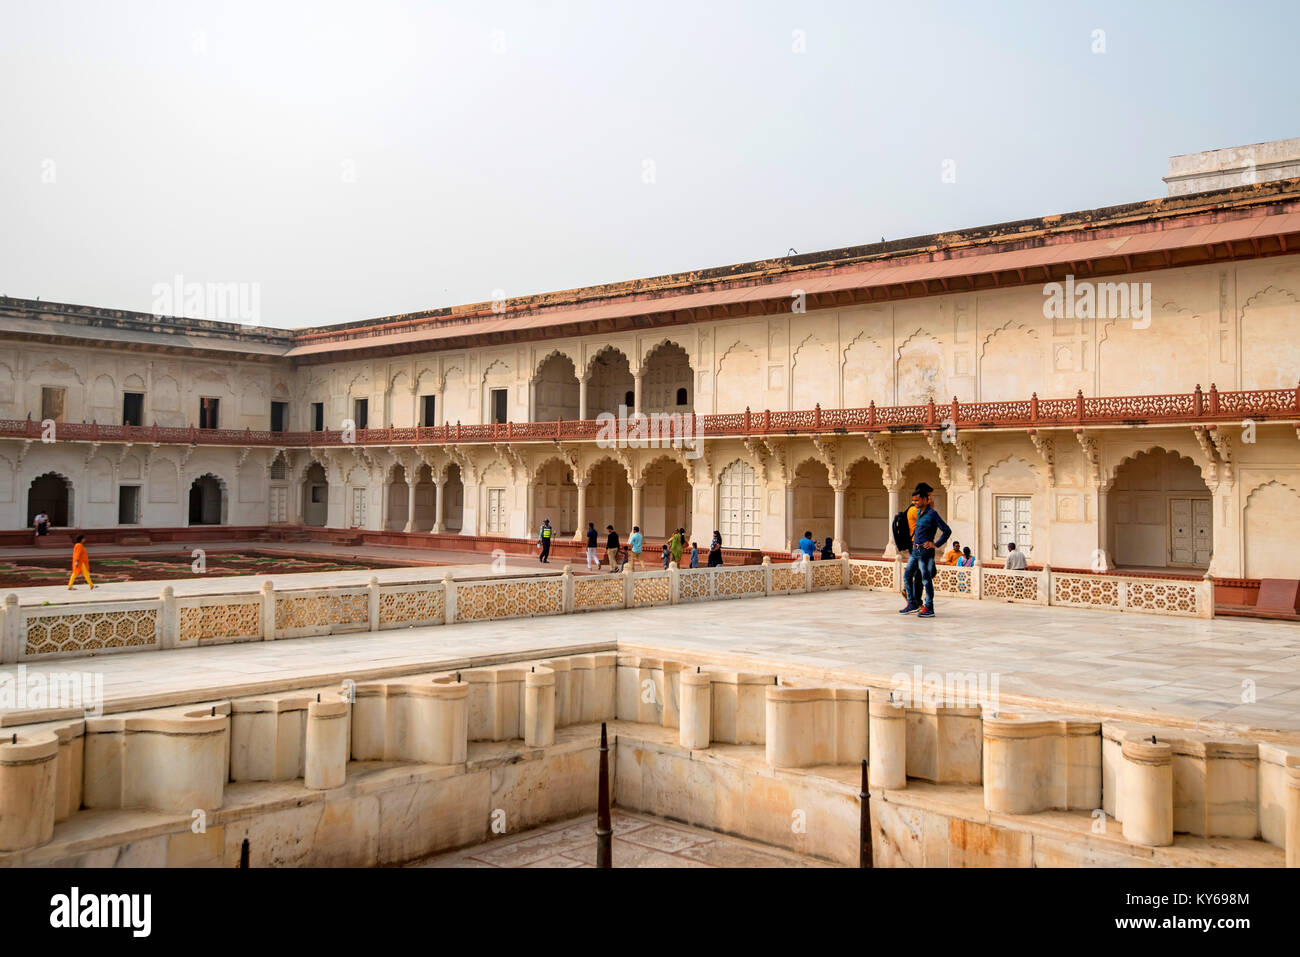 FORT, AGRA, INDE - NOVEMBRE 2017 : le pavillon d'or de Fort d'Agra Banque D'Images